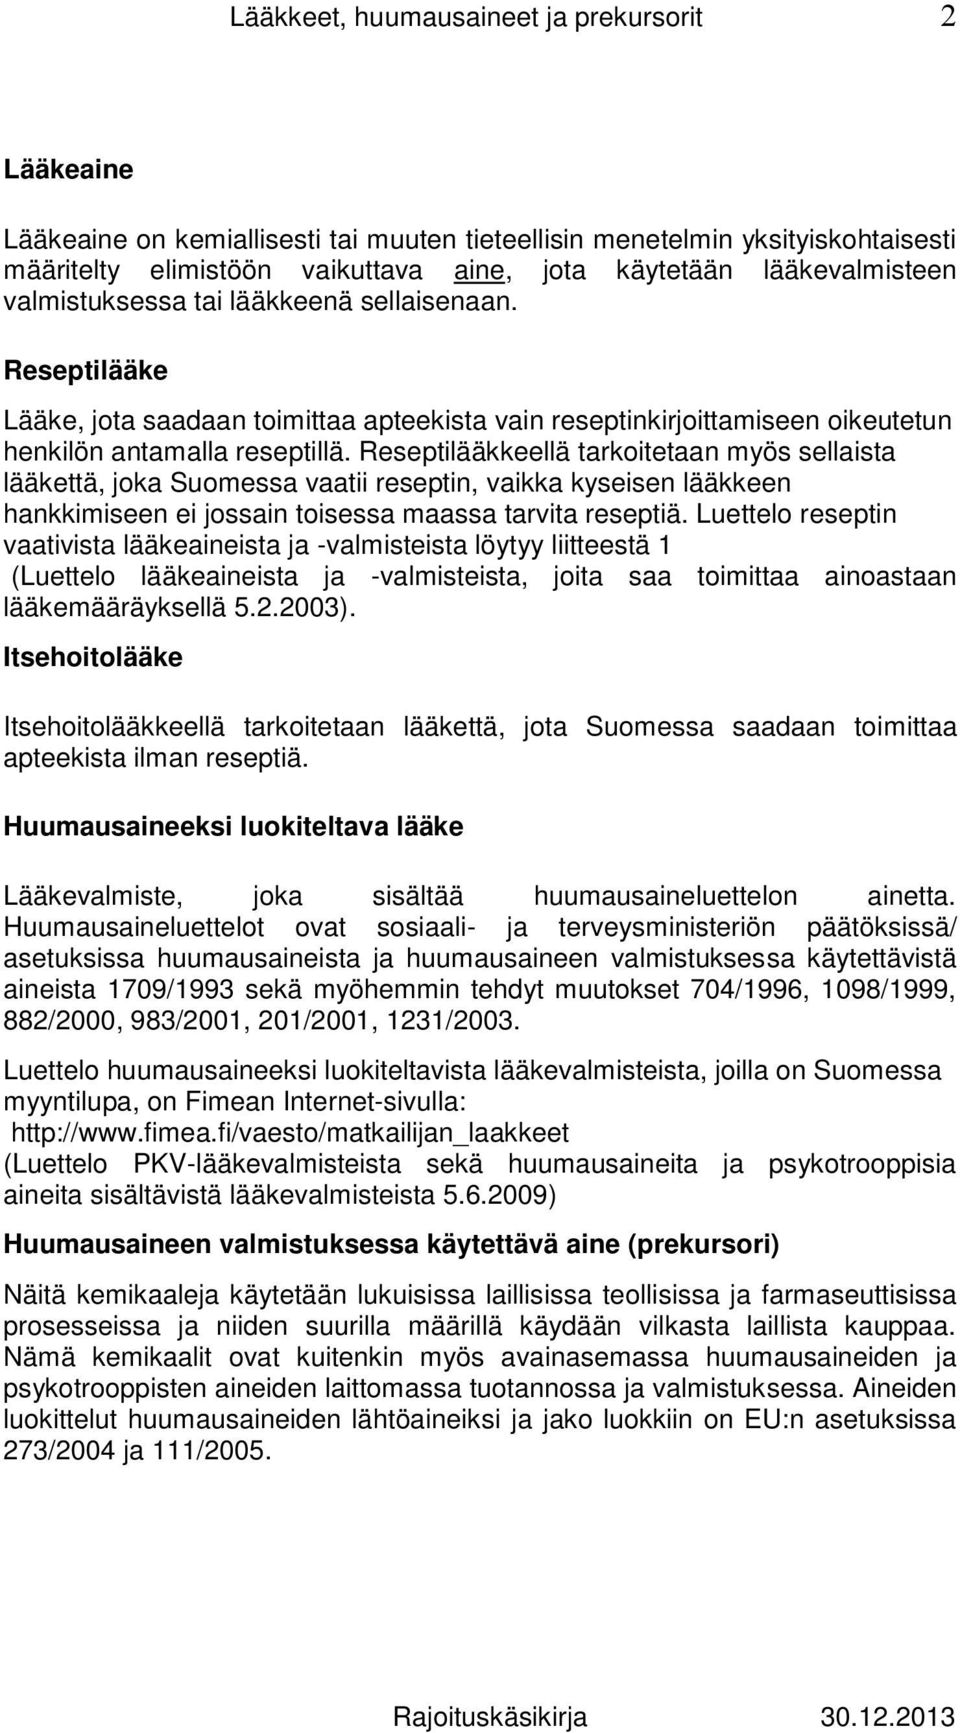 Reseptilääkkeellä tarkoitetaan myös sellaista lääkettä, joka Suomessa vaatii reseptin, vaikka kyseisen lääkkeen hankkimiseen ei jossain toisessa maassa tarvita reseptiä.